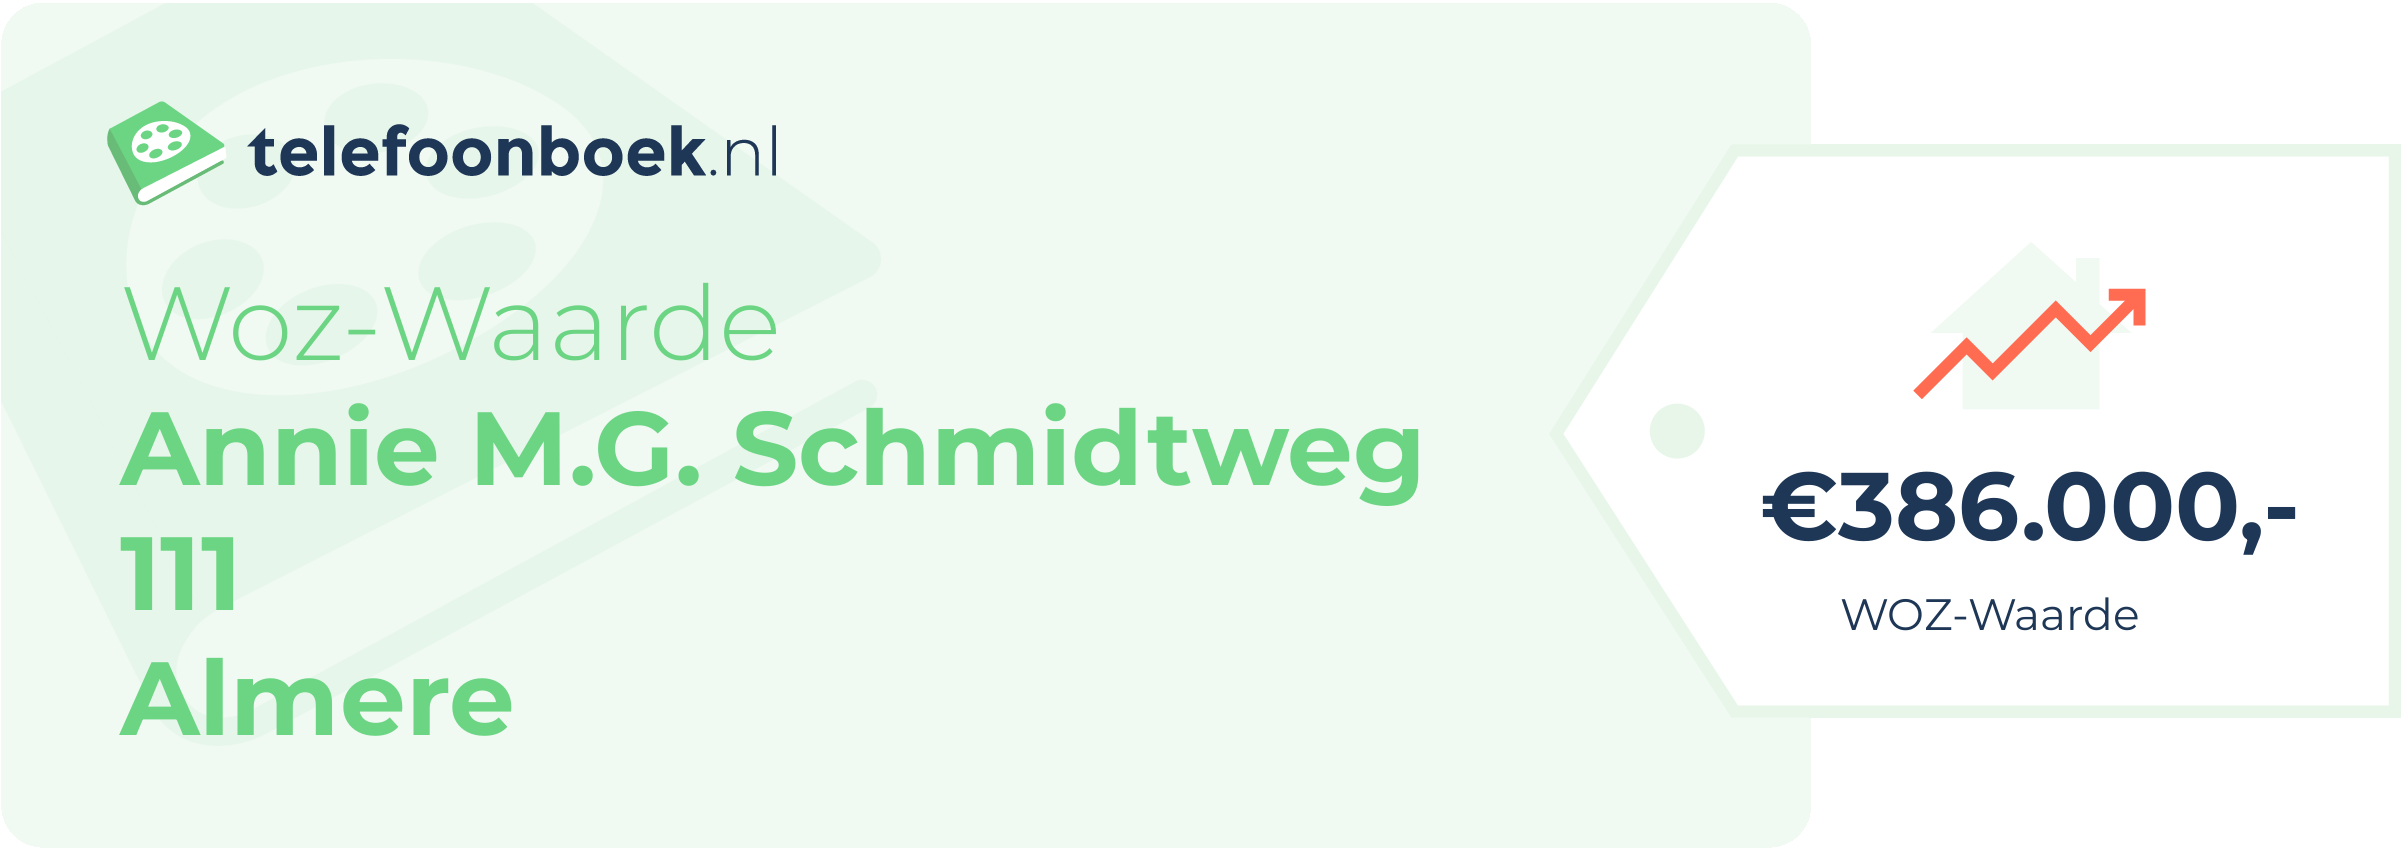 WOZ-waarde Annie M.G. Schmidtweg 111 Almere